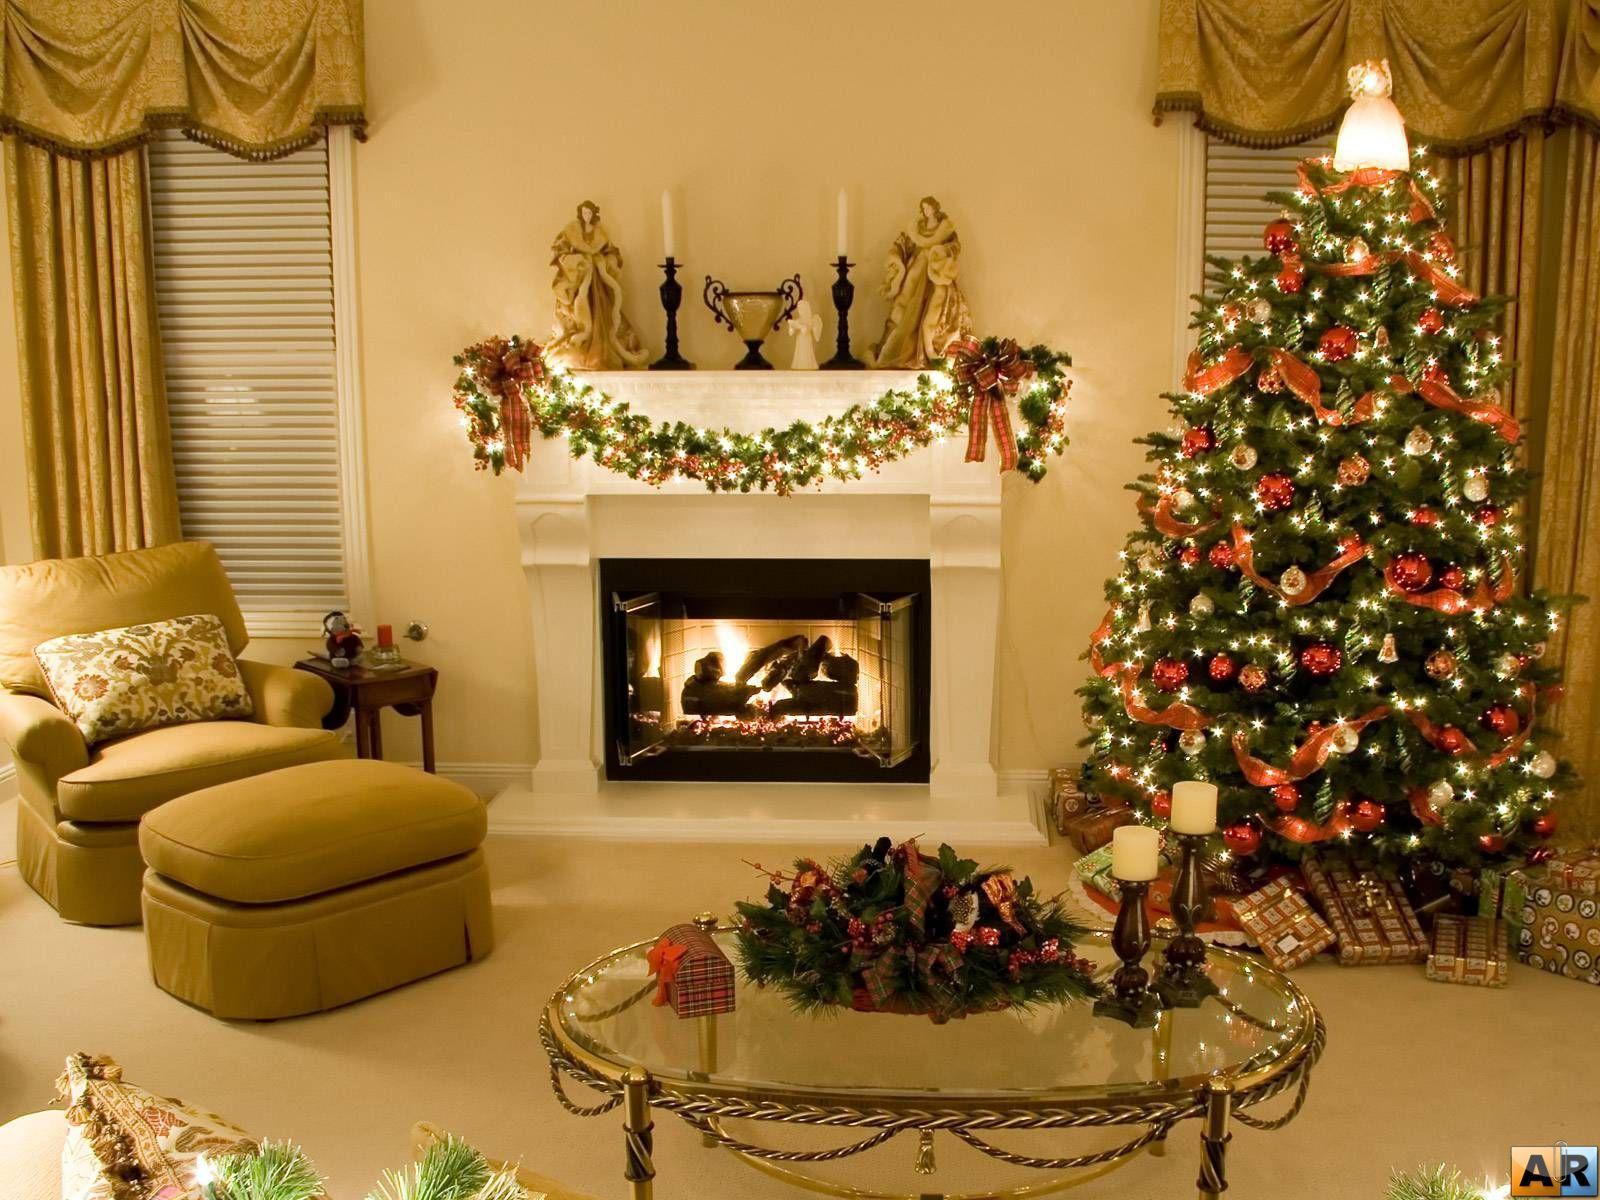 Christmas Eve wallpaper HD. Christmas interiors